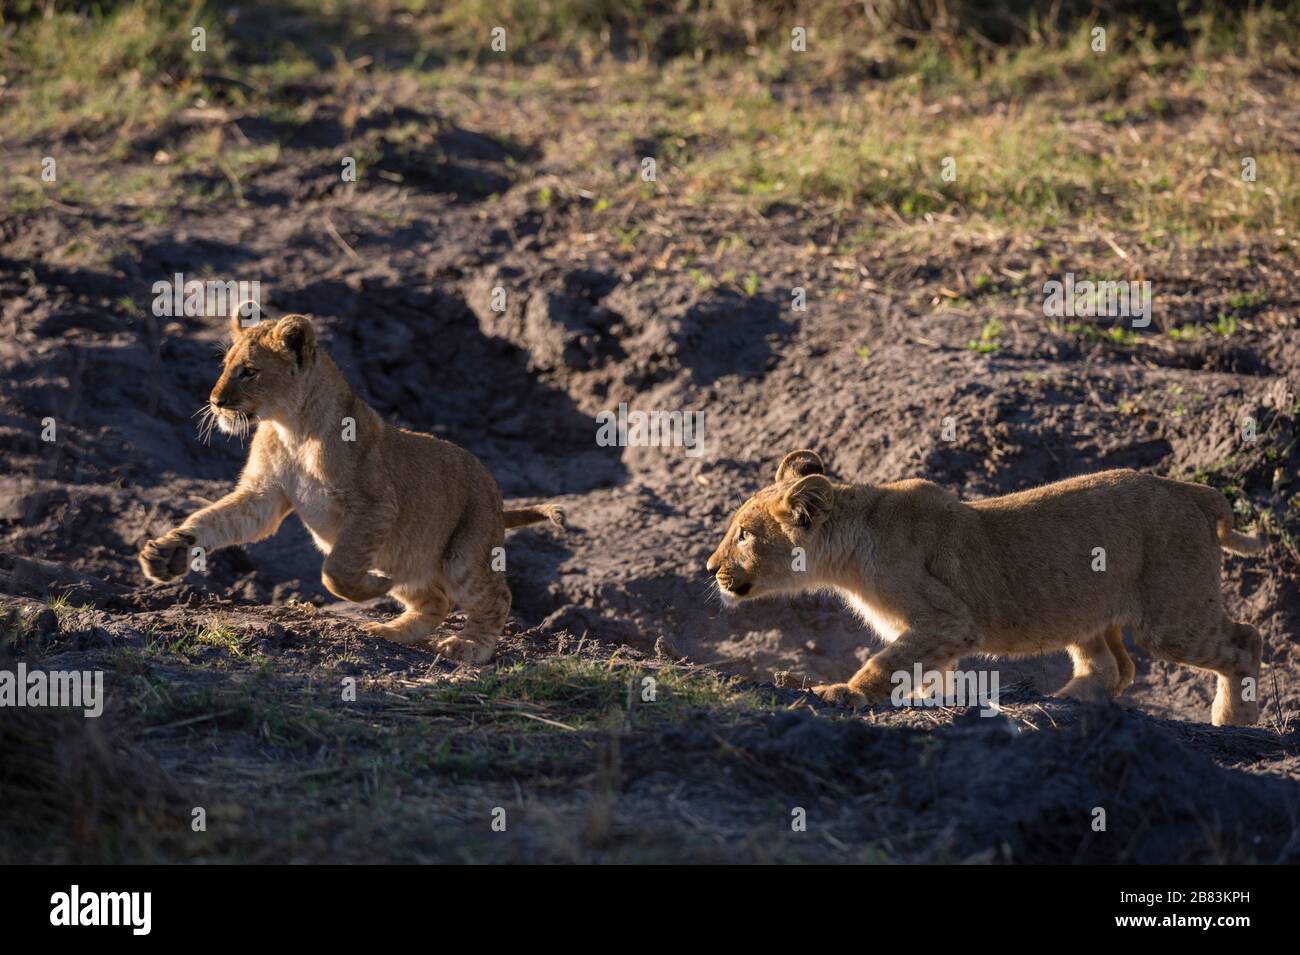 Dos cachorros de león, Panthera leo, jugando. Foto de stock